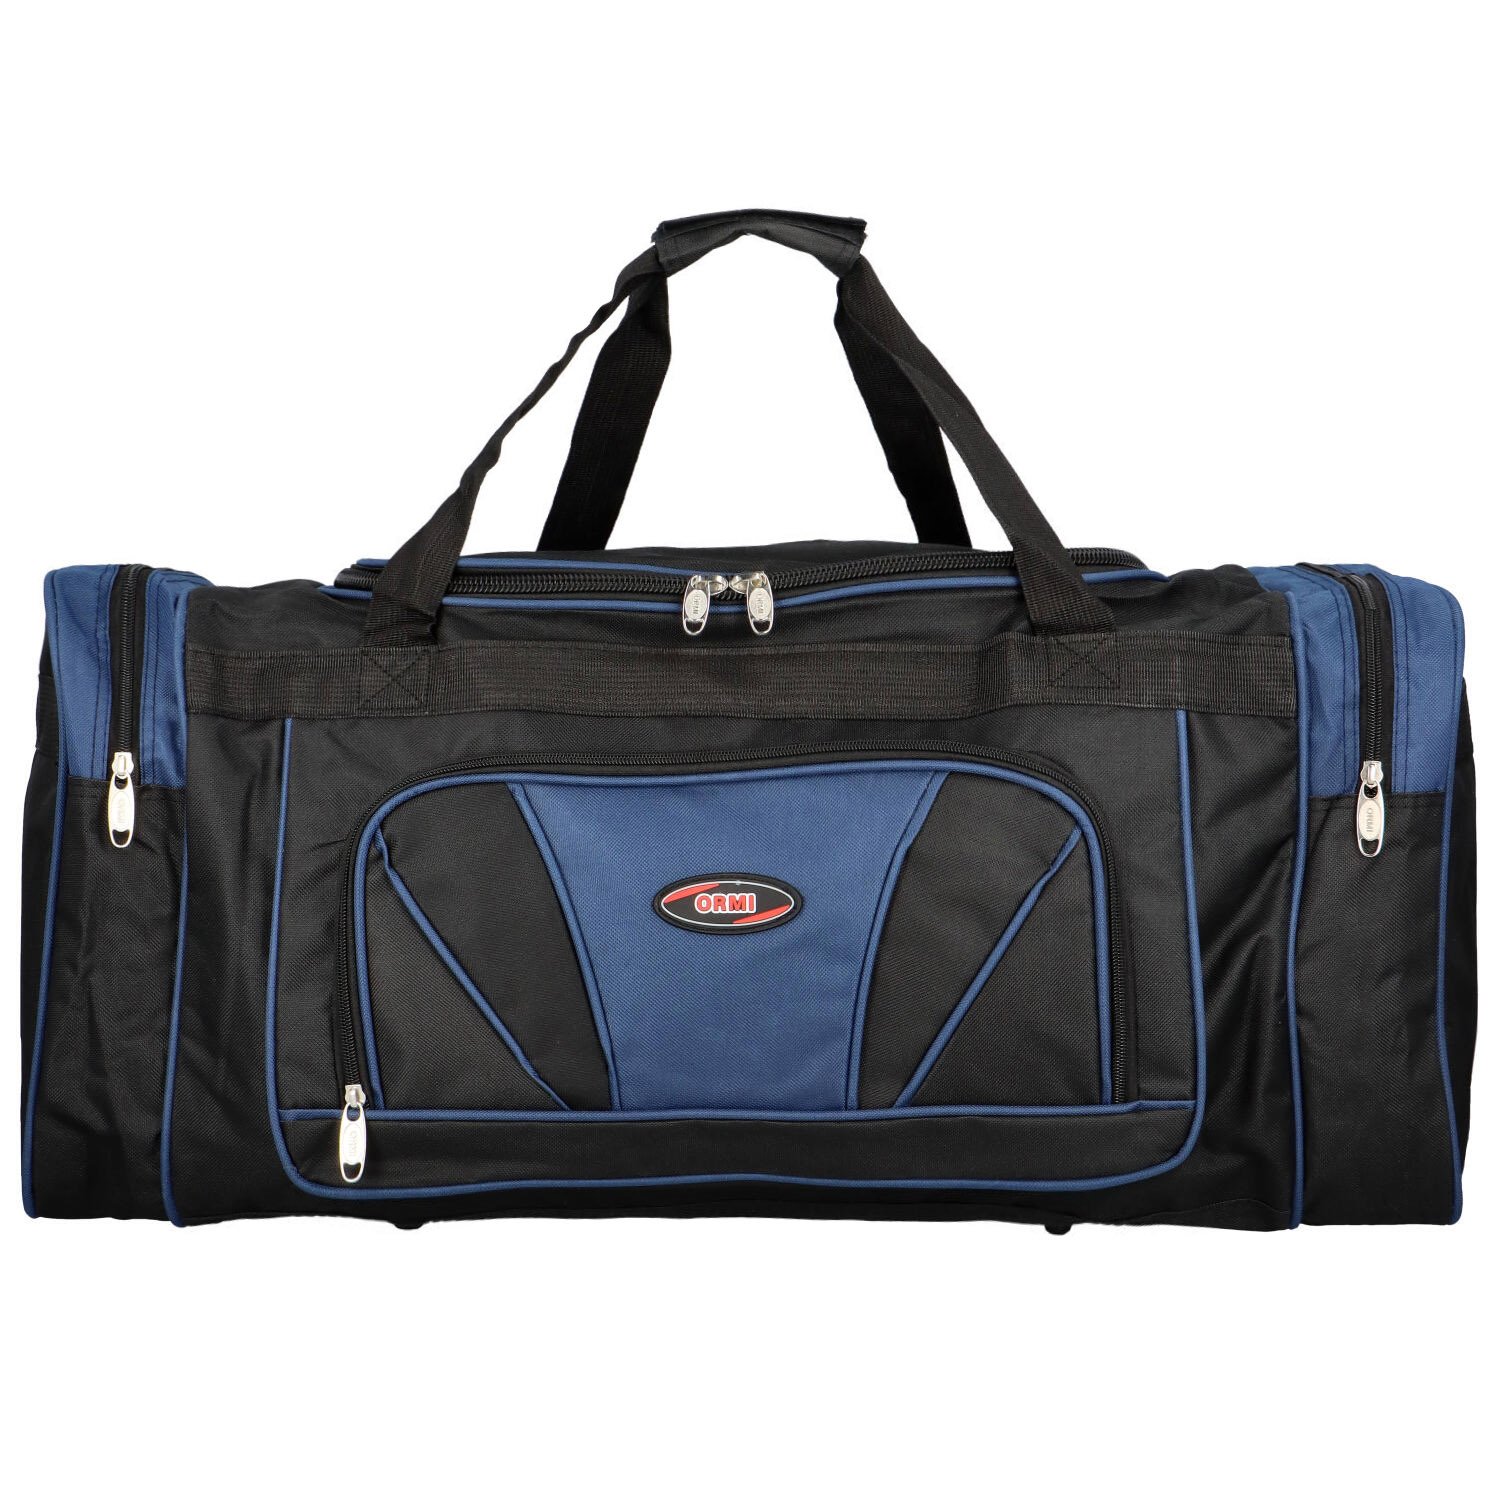 Sportovní textilní taška Ormi Declan, modrá